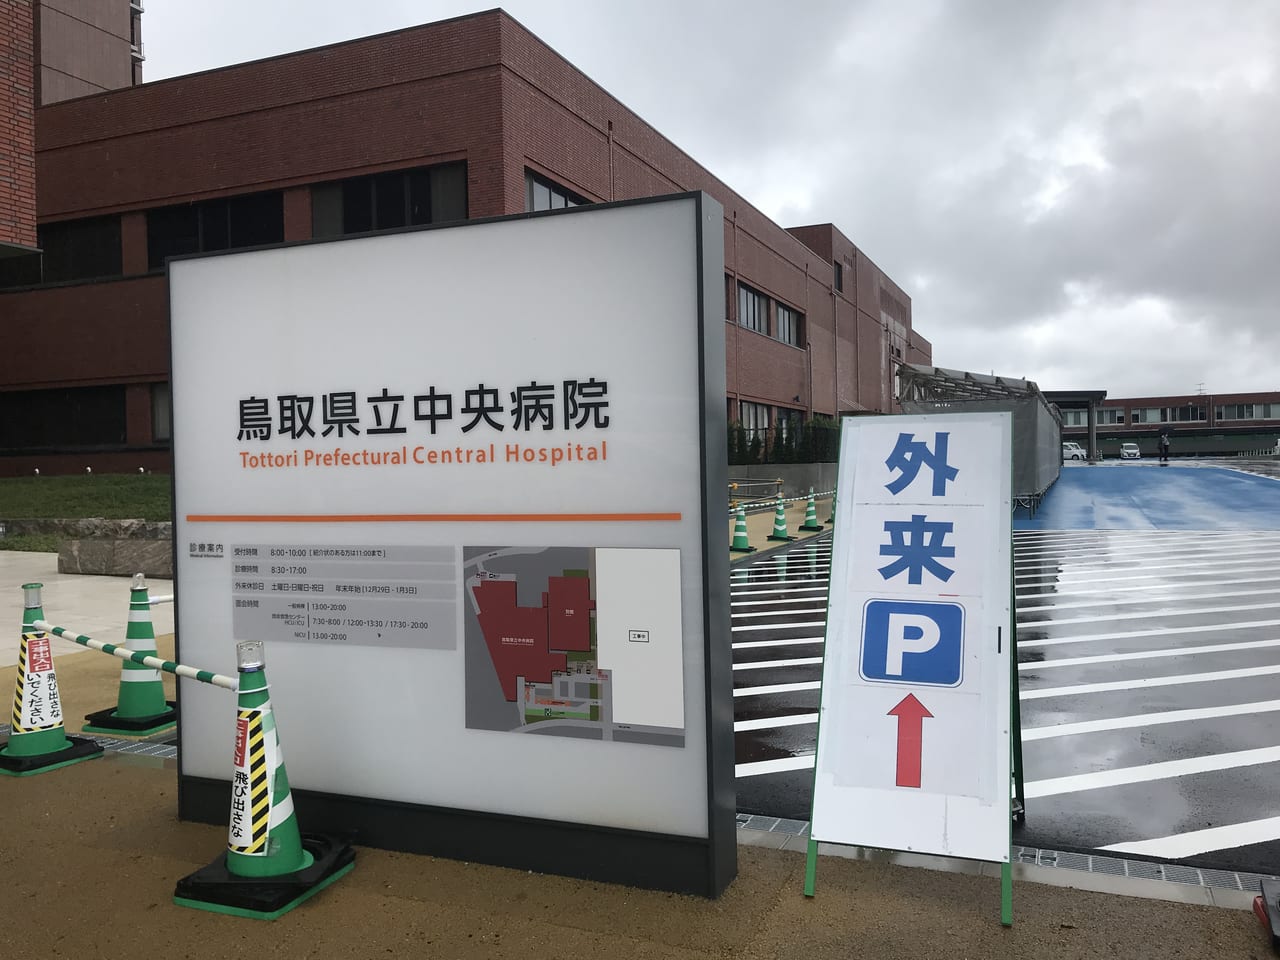 鳥取県立中央病院の看板と駐車場